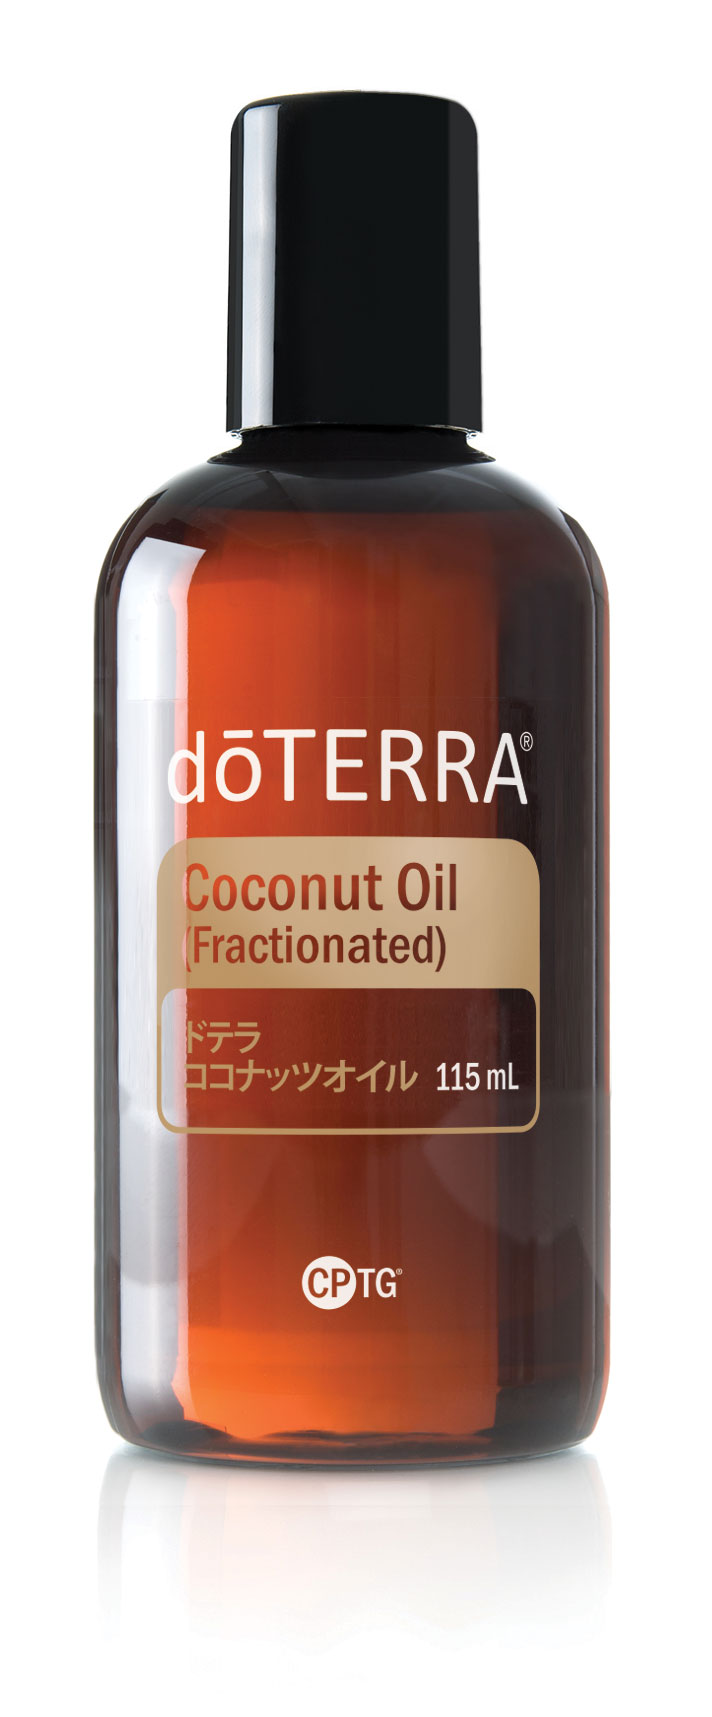 ドテラ ココナッツオイル | Fractionated Coconut Oil | doTERRA 